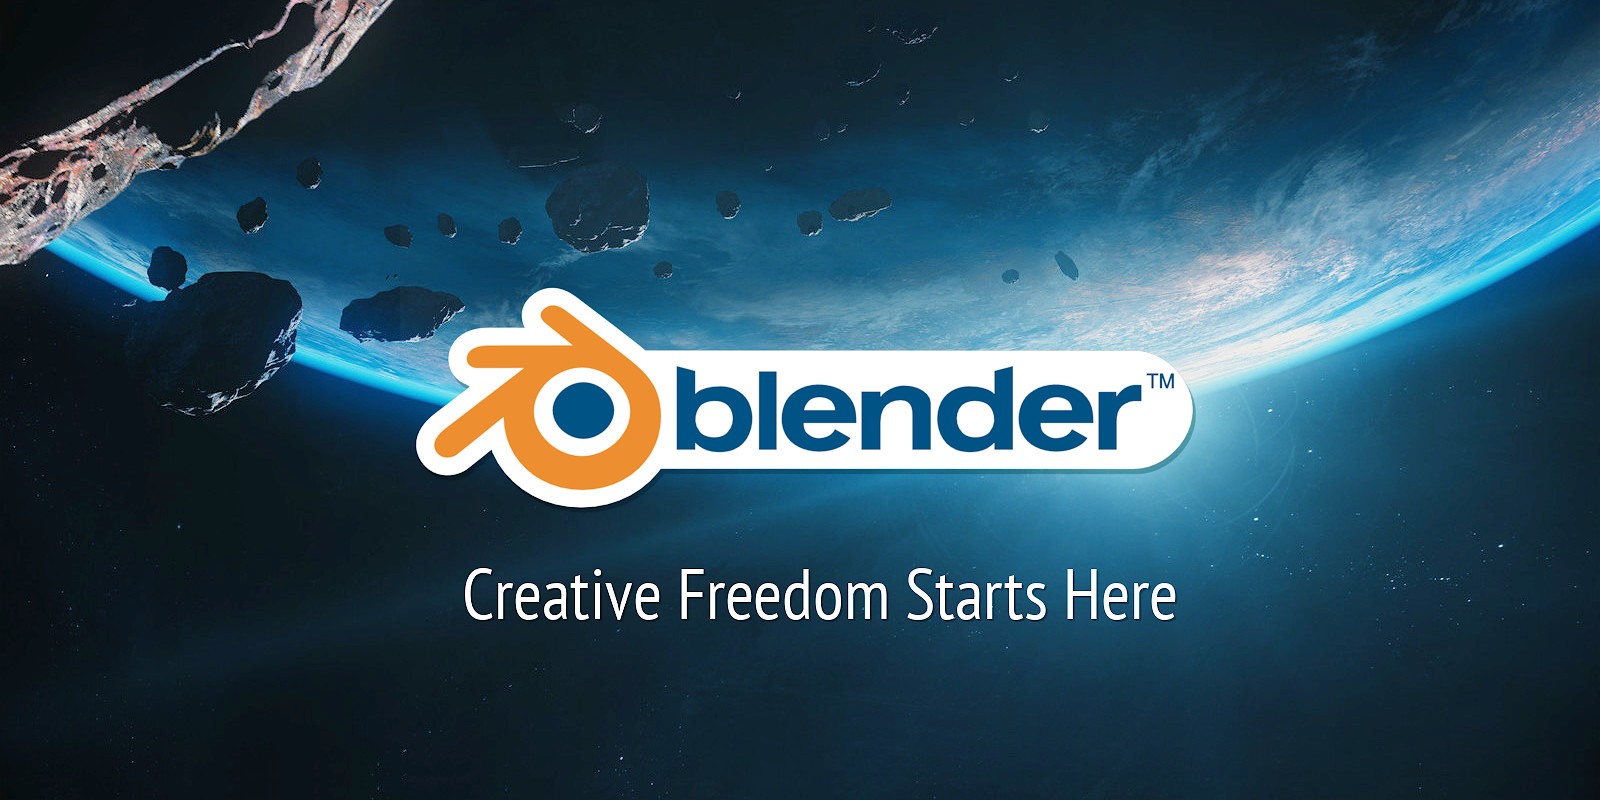 Website blender.org